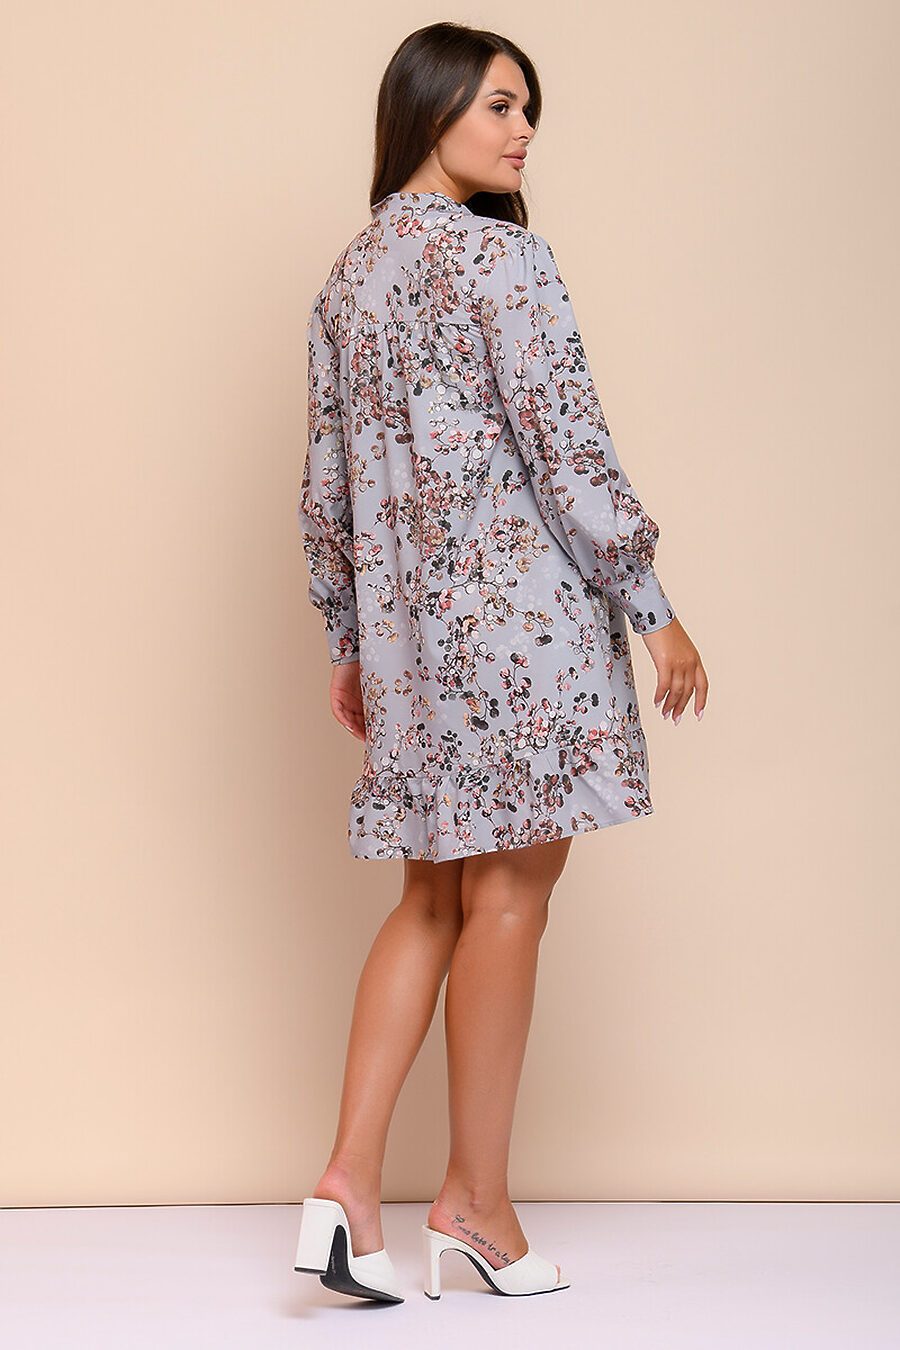 Платье для женщин 1001 DRESS 685824 купить оптом от производителя. Совместная покупка женской одежды в OptMoyo